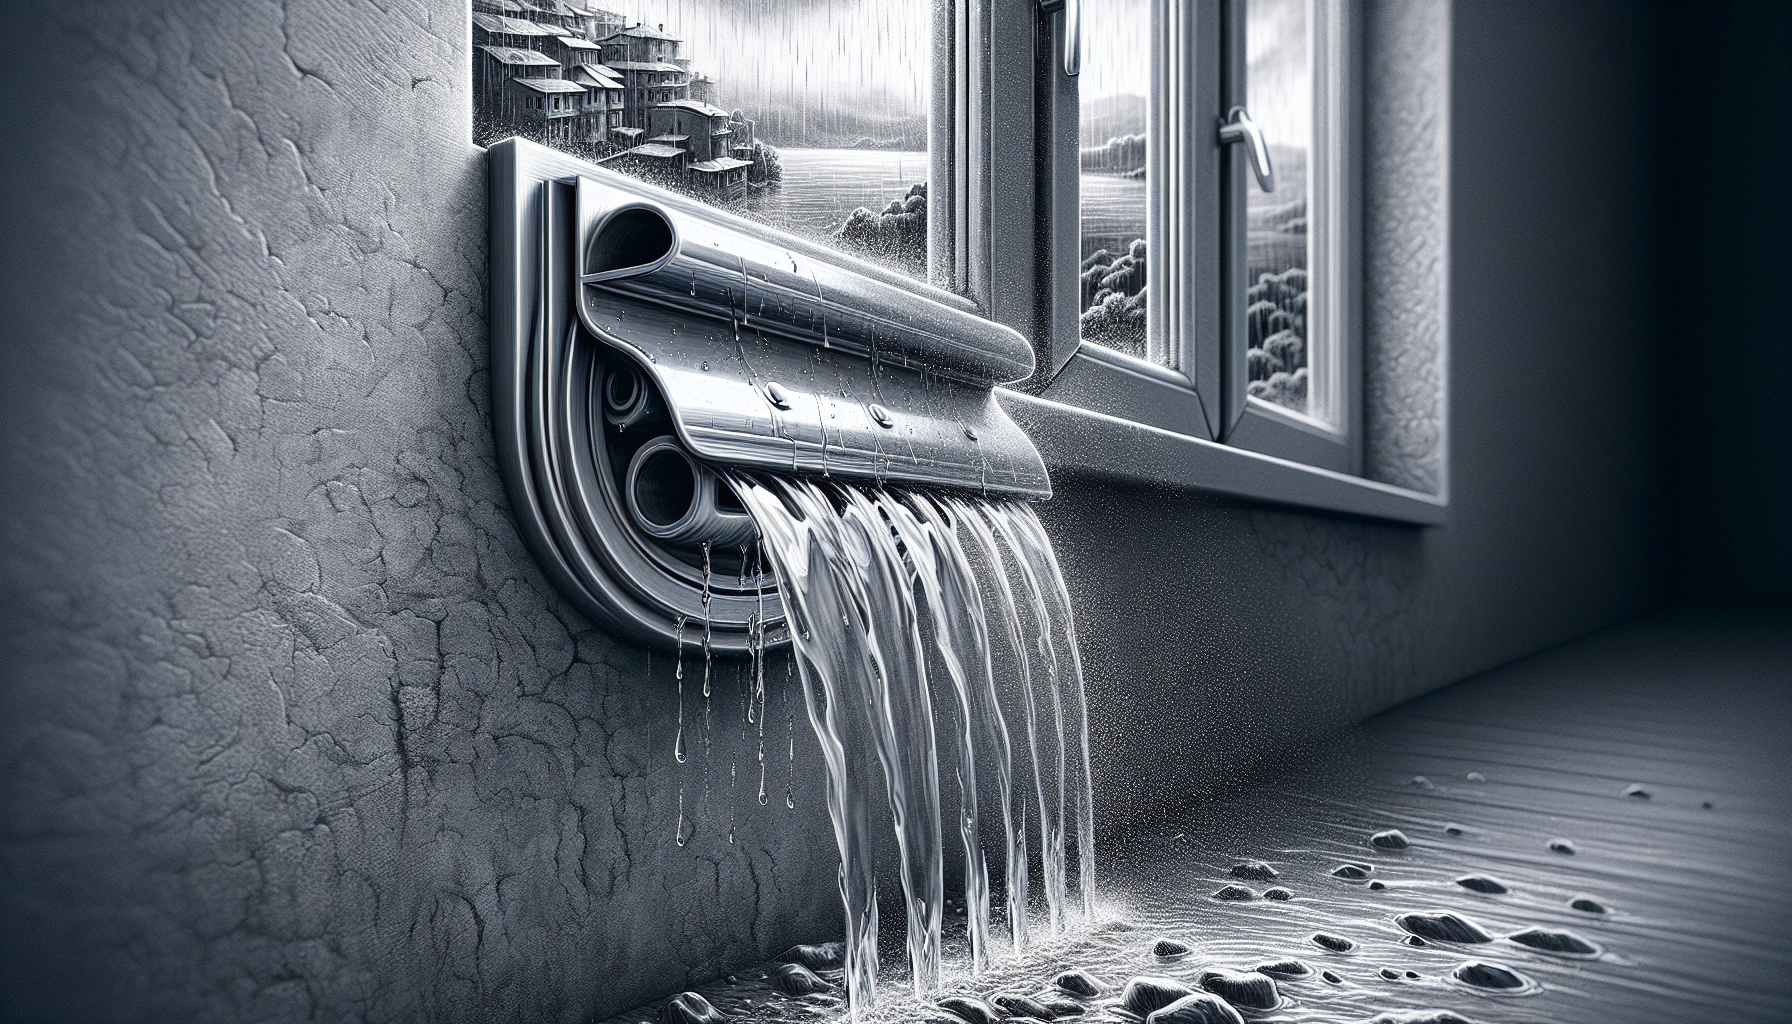 Eine künstlerische Darstellung von Wasserschlitzkappen, die den Ablauf bei Regen sichern